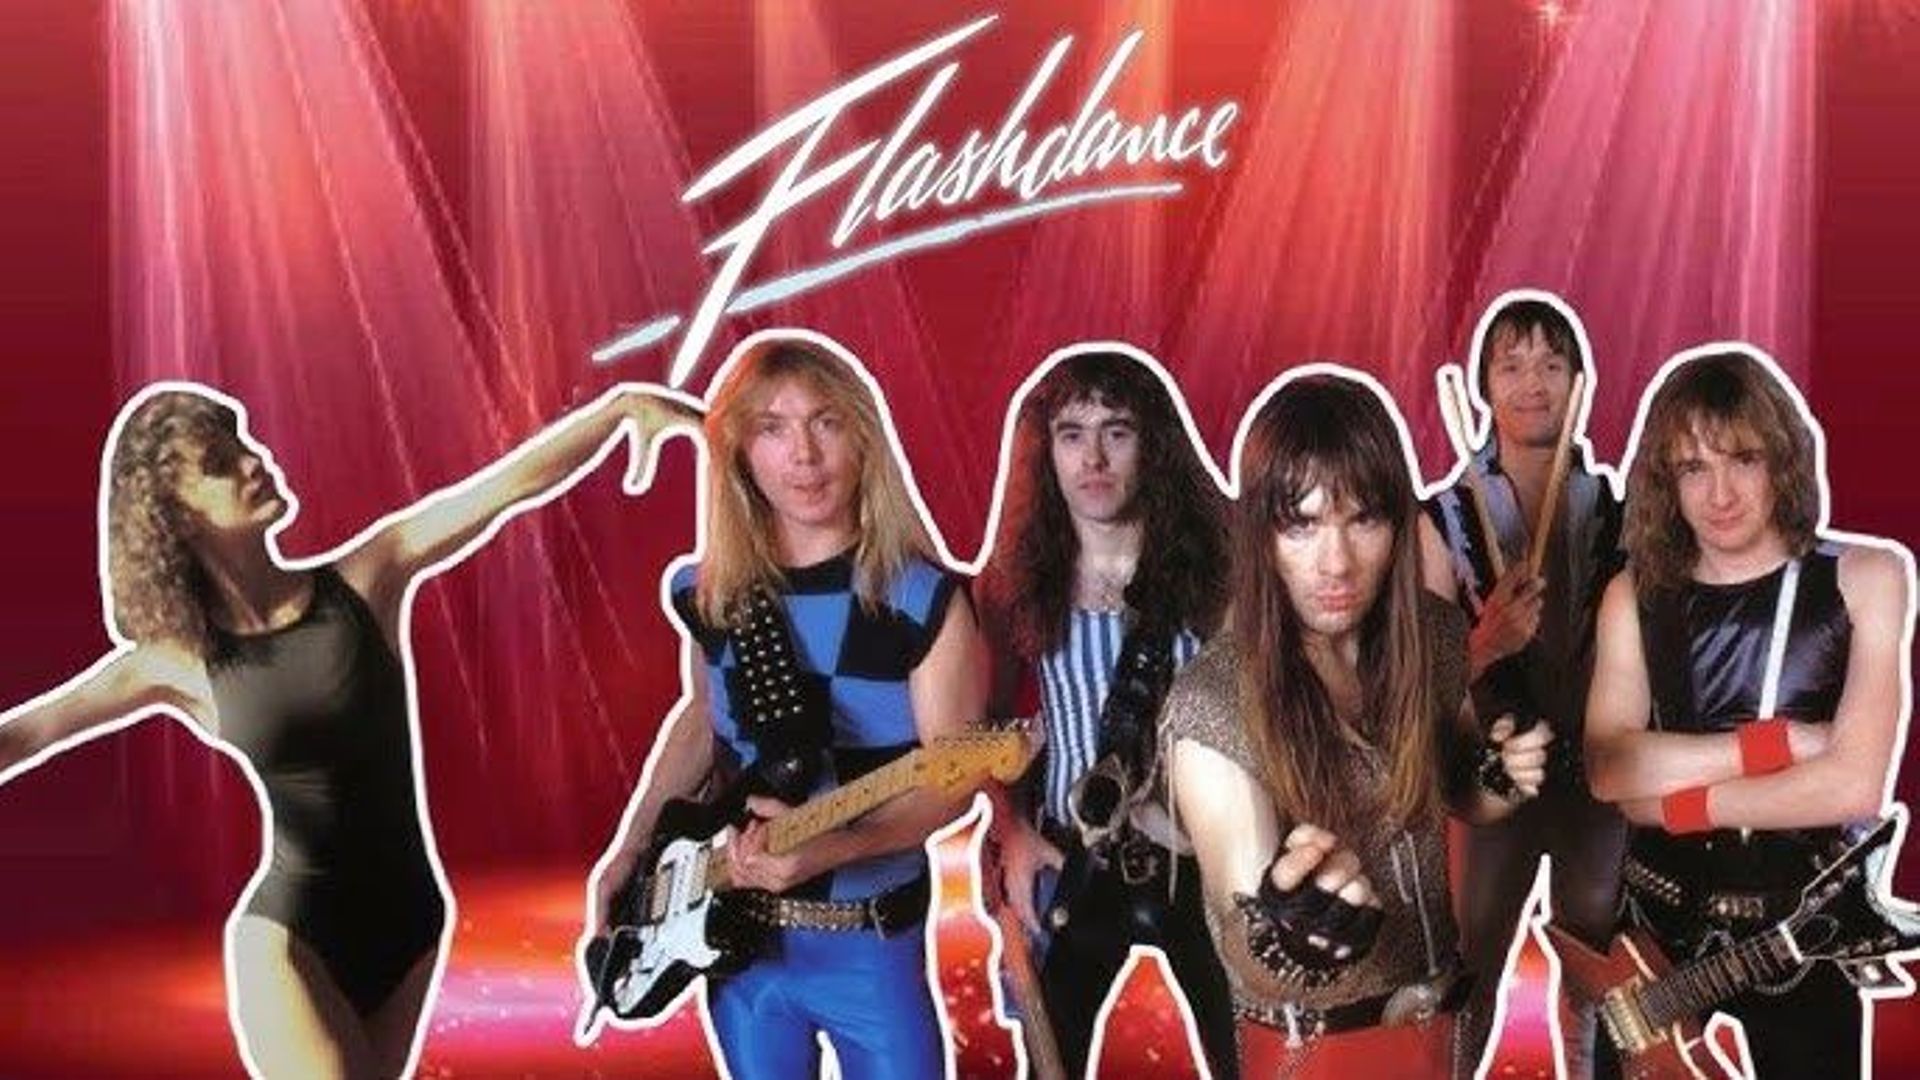 Un mash-up improbable entre Iron Maiden et Flashdance